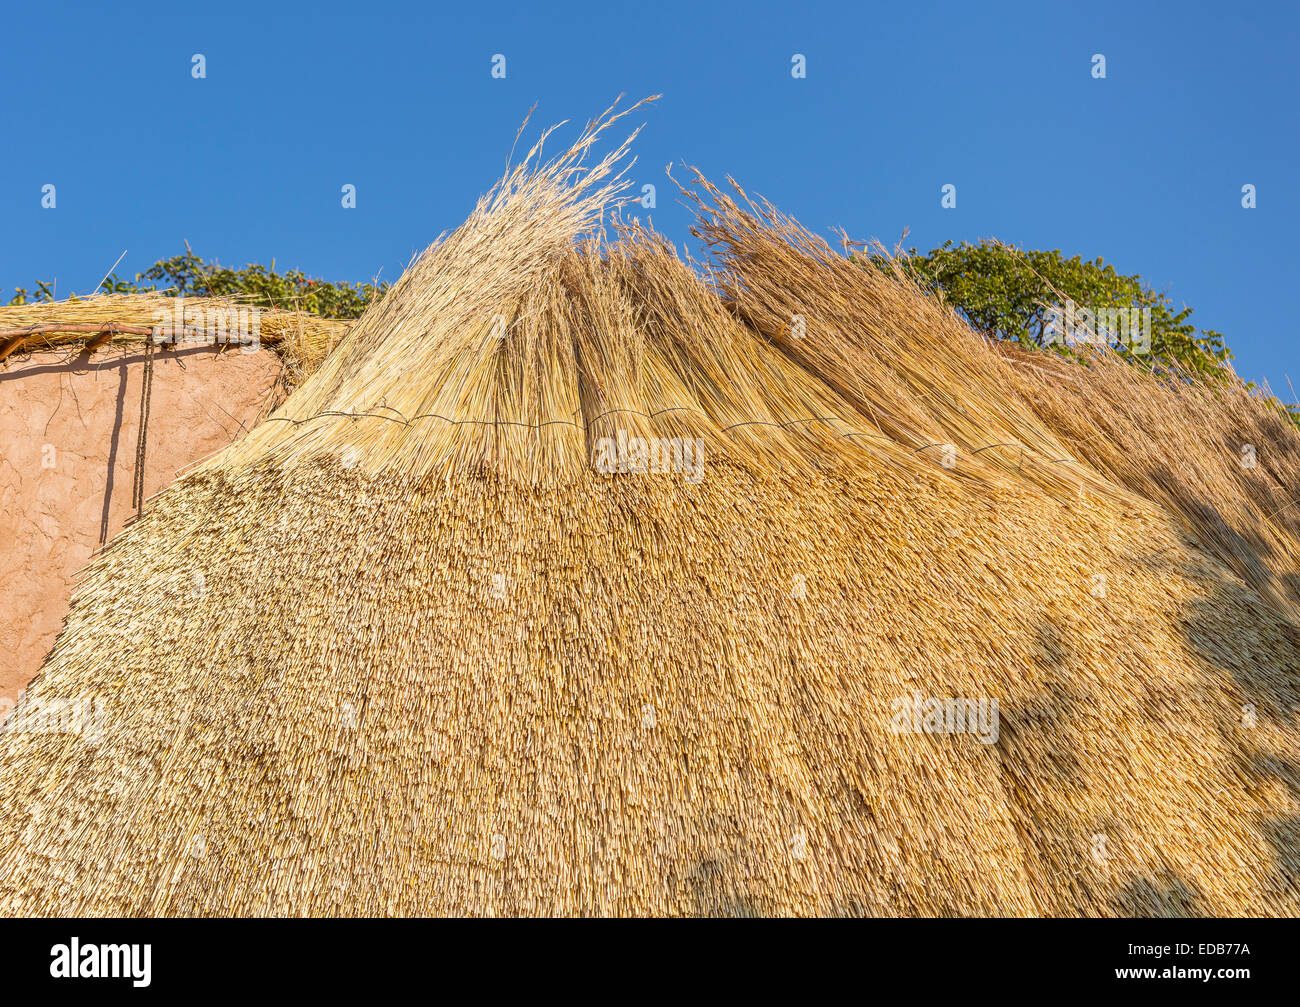 Swasiland, Afrika - Dachkonstruktion aus einer traditionellen Bienenstock-Hütte von strohgedeckten Trockenrasen im Naturreservat Phophonyane gebildet Stockfoto